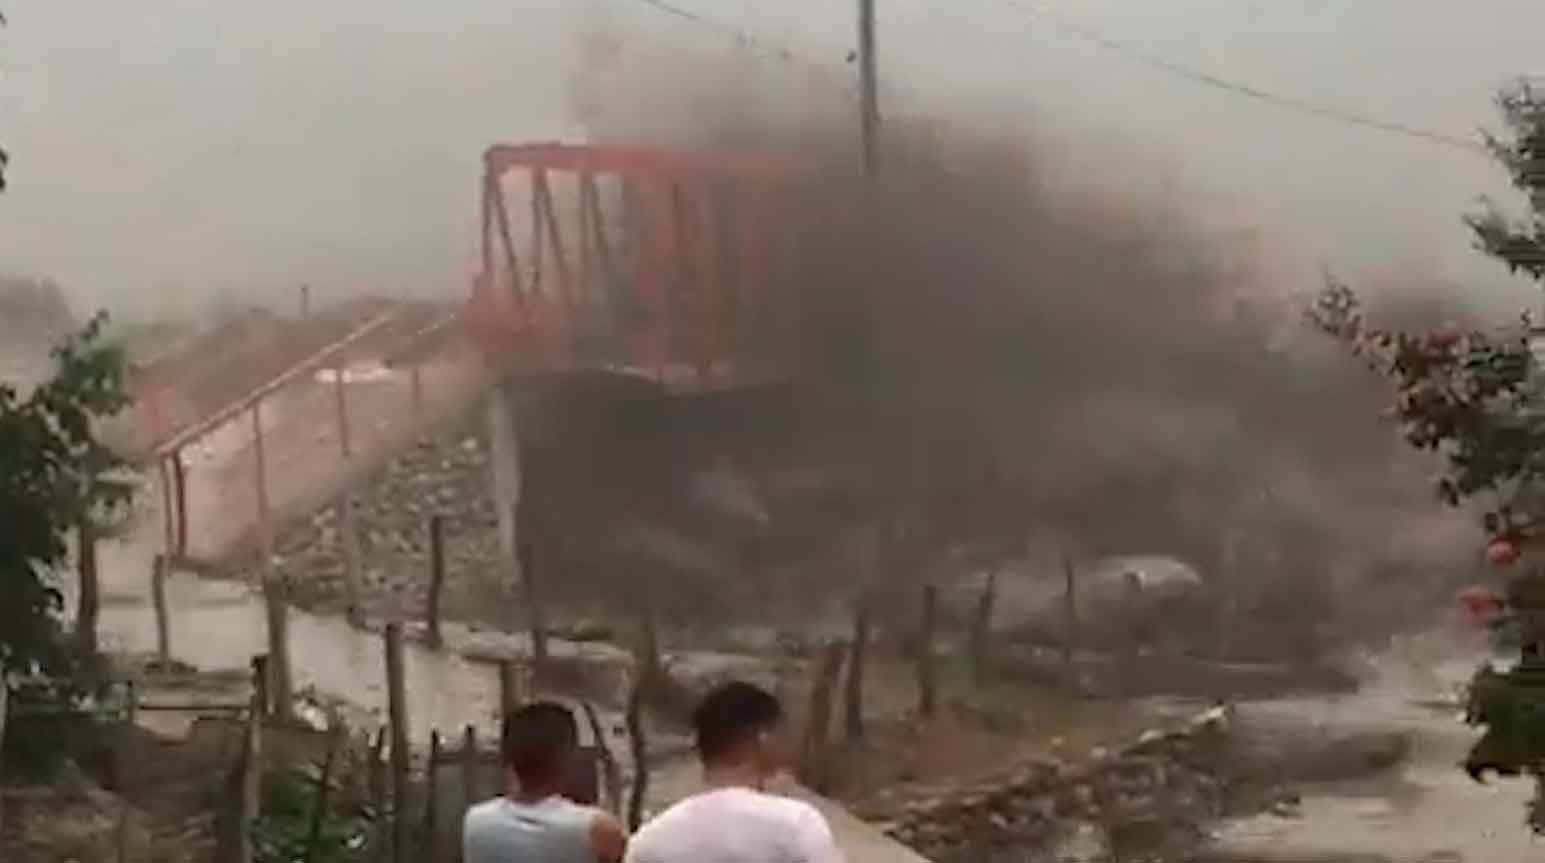 الفيديو يُظهر اللحظة التي يجتاح فيها انهيار طيني ضخم جسرًا في الأرجنتين. الصورة والفيديو: تجسيد من Twitter @Top_Disaster